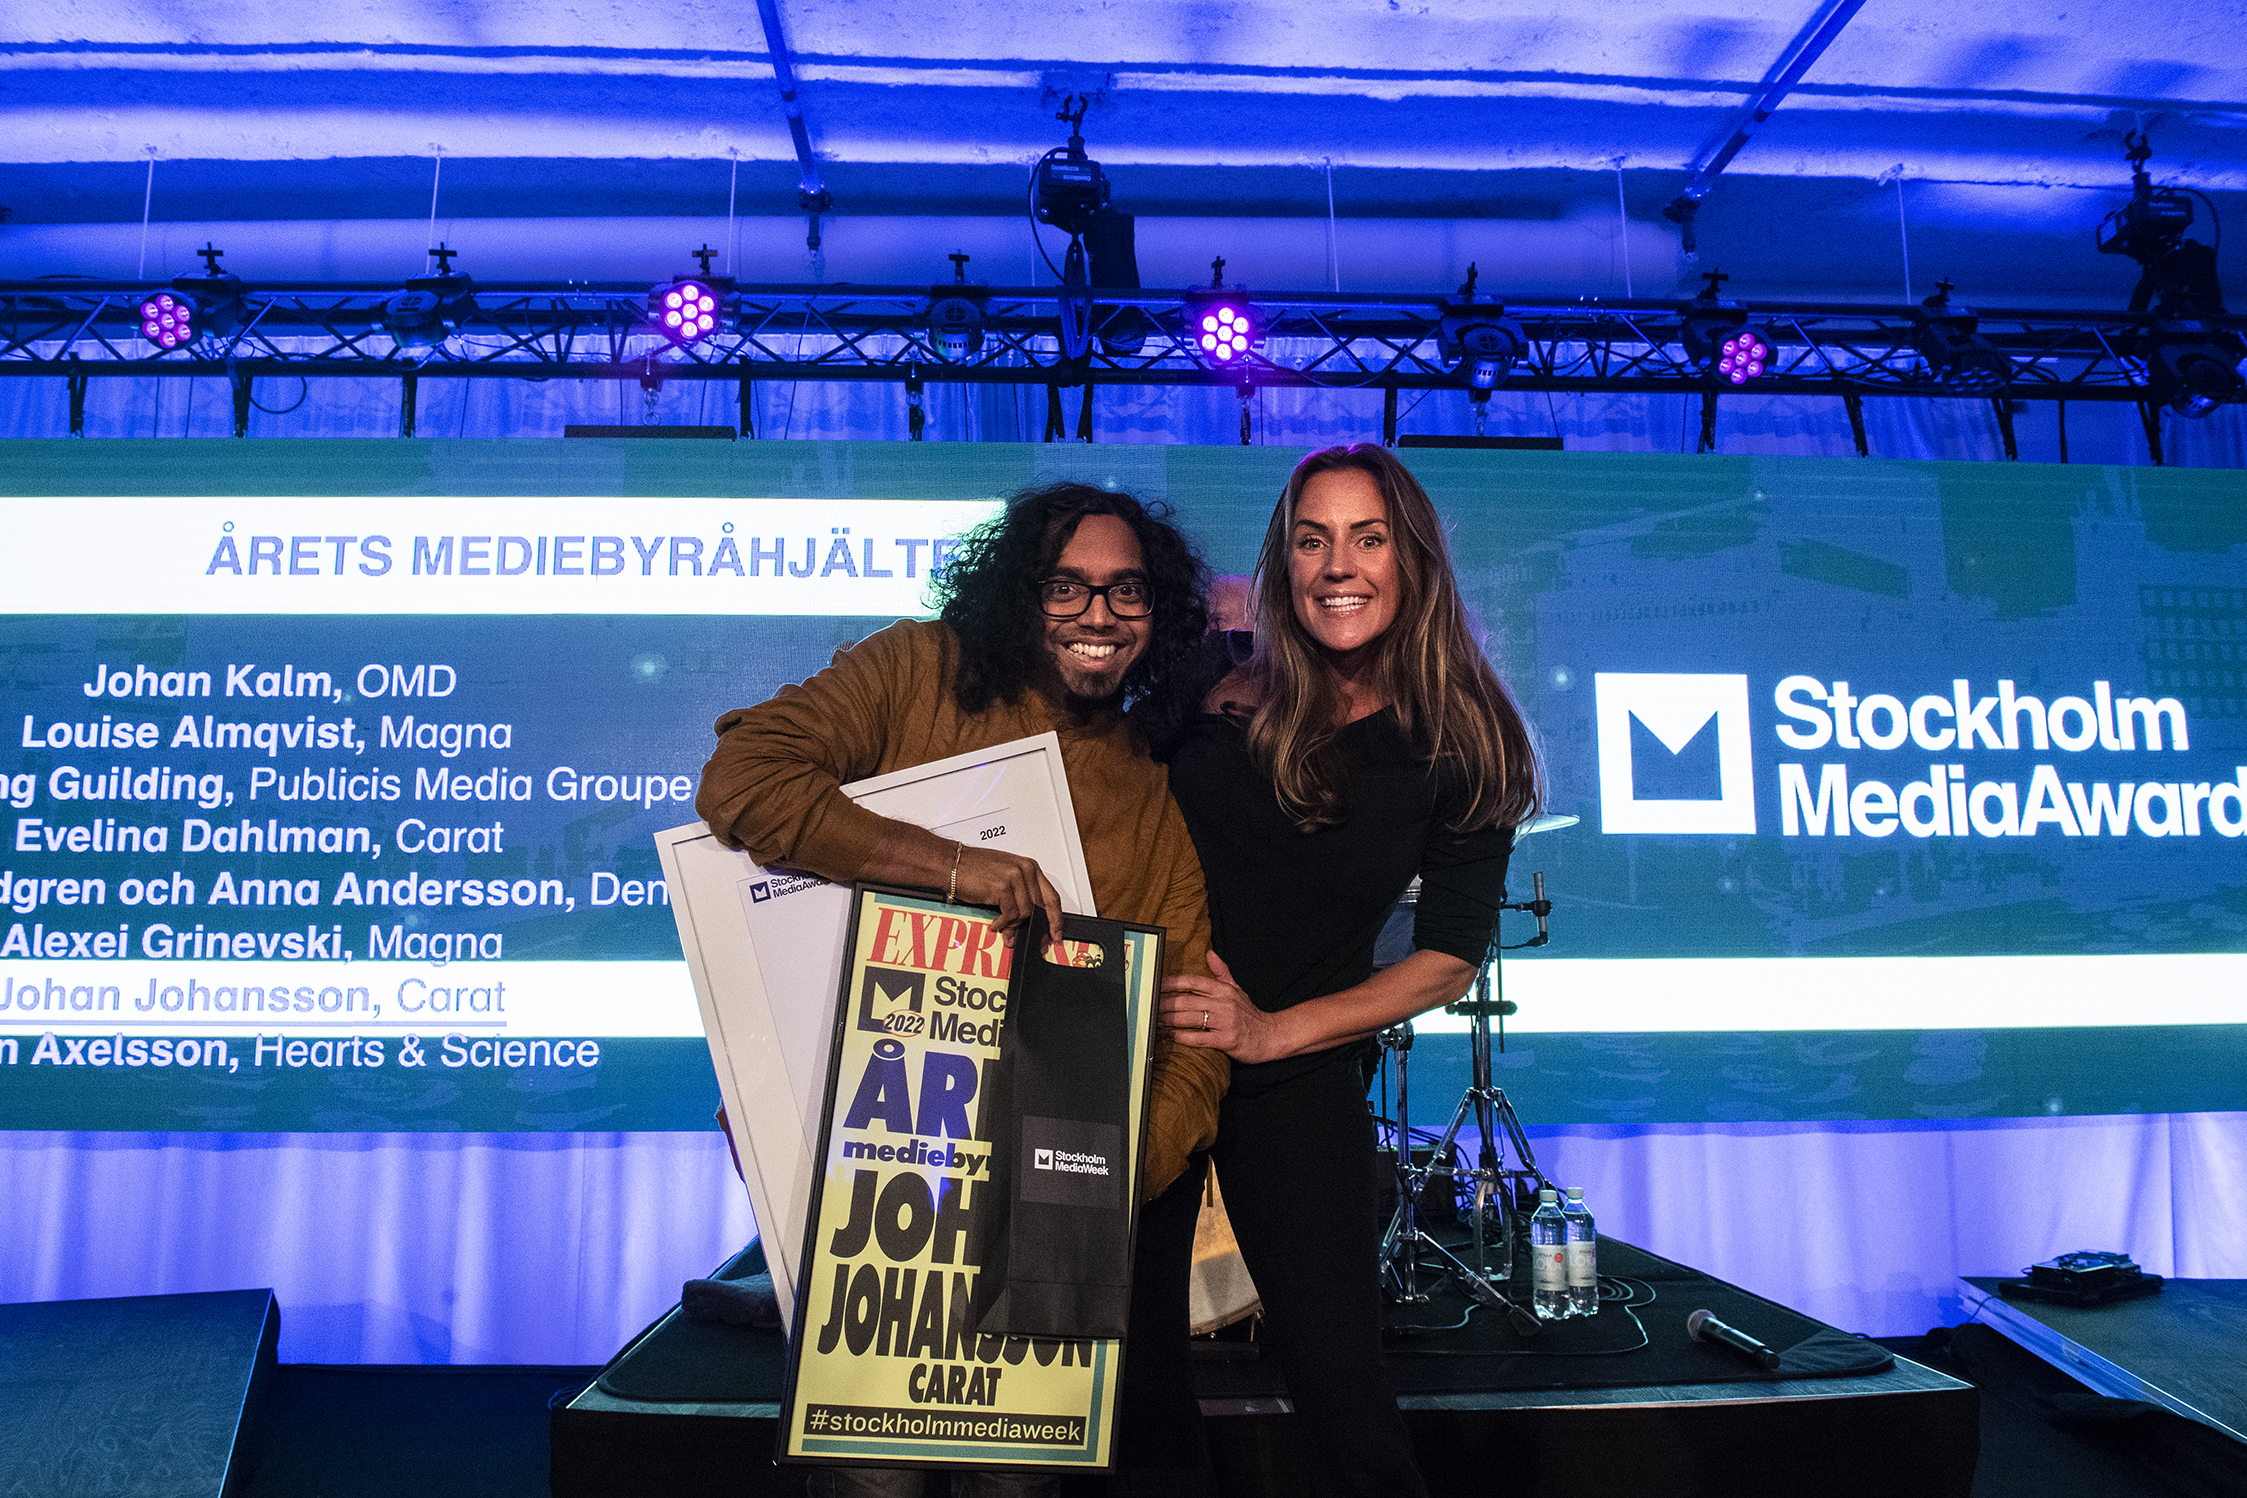 Årets Mediebyråhjälte StockholmMediaAward